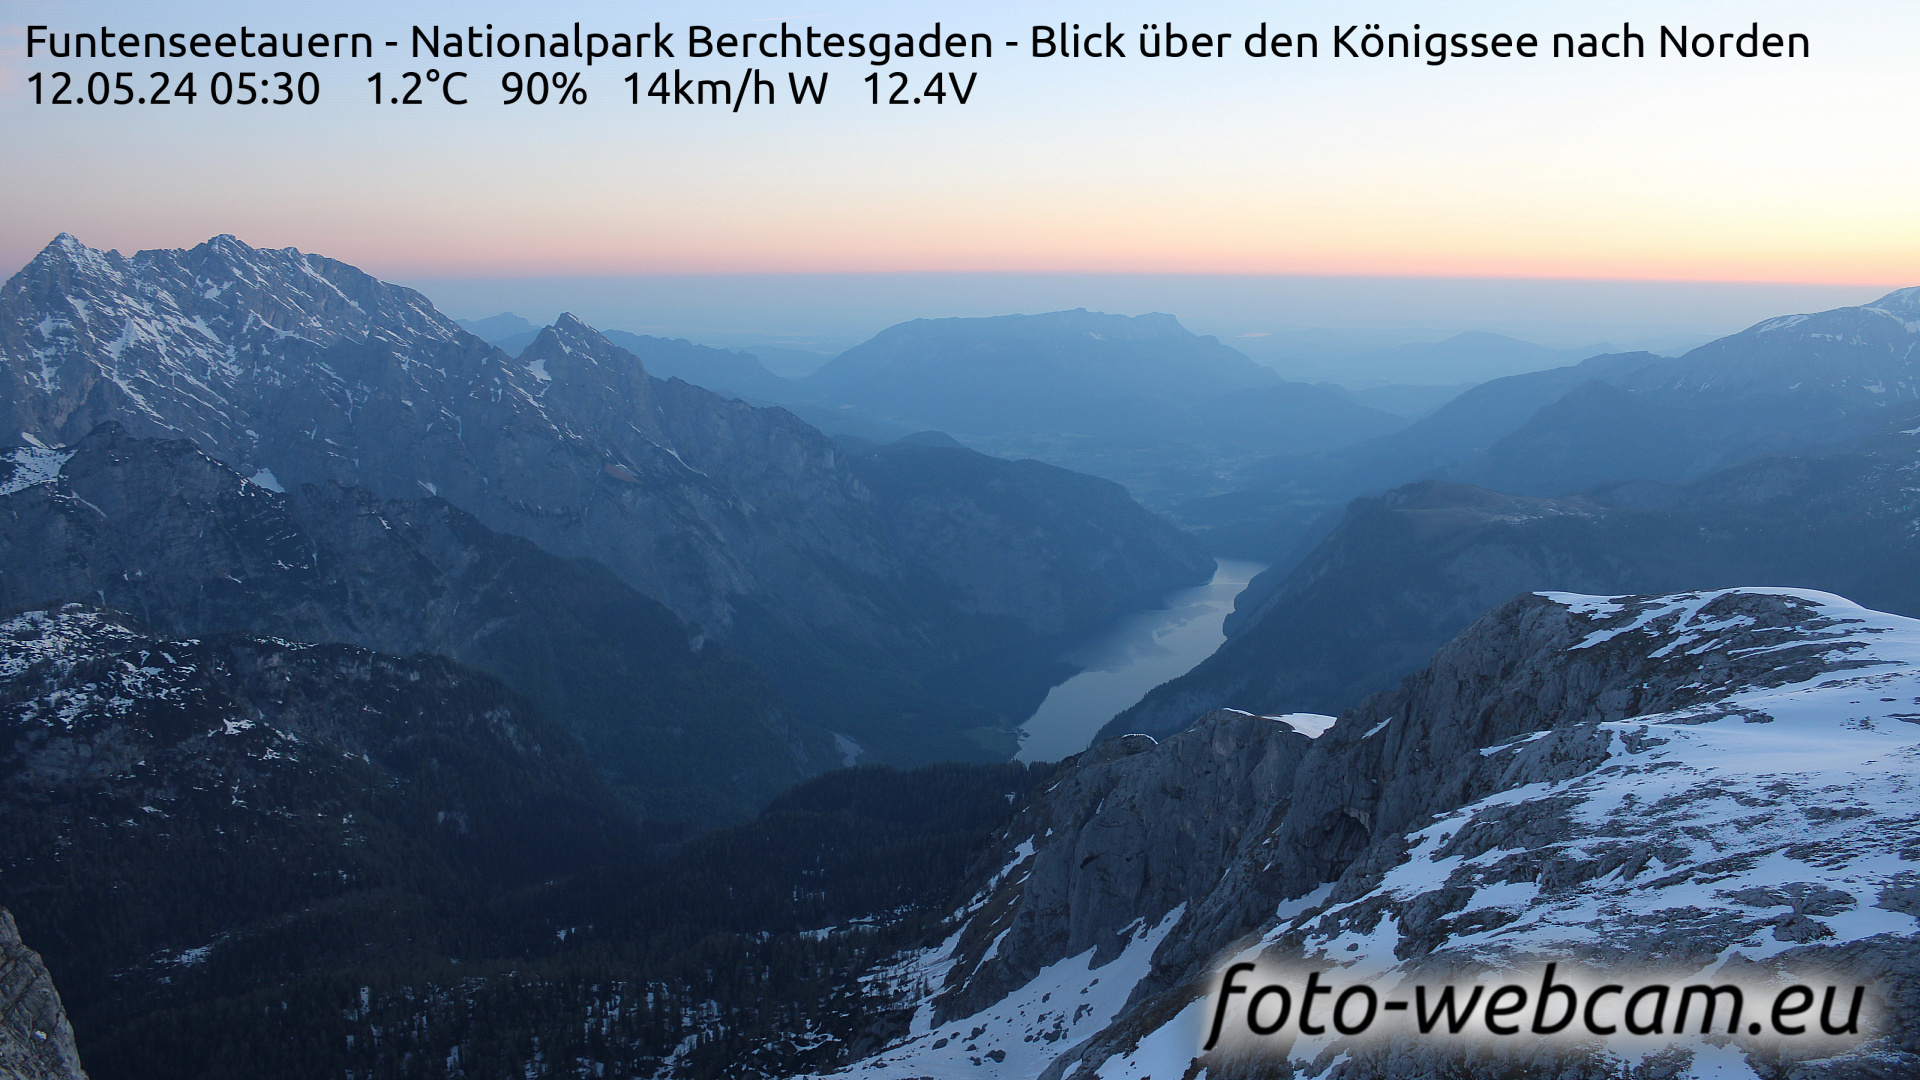 Berchtesgaden Fri. 05:48